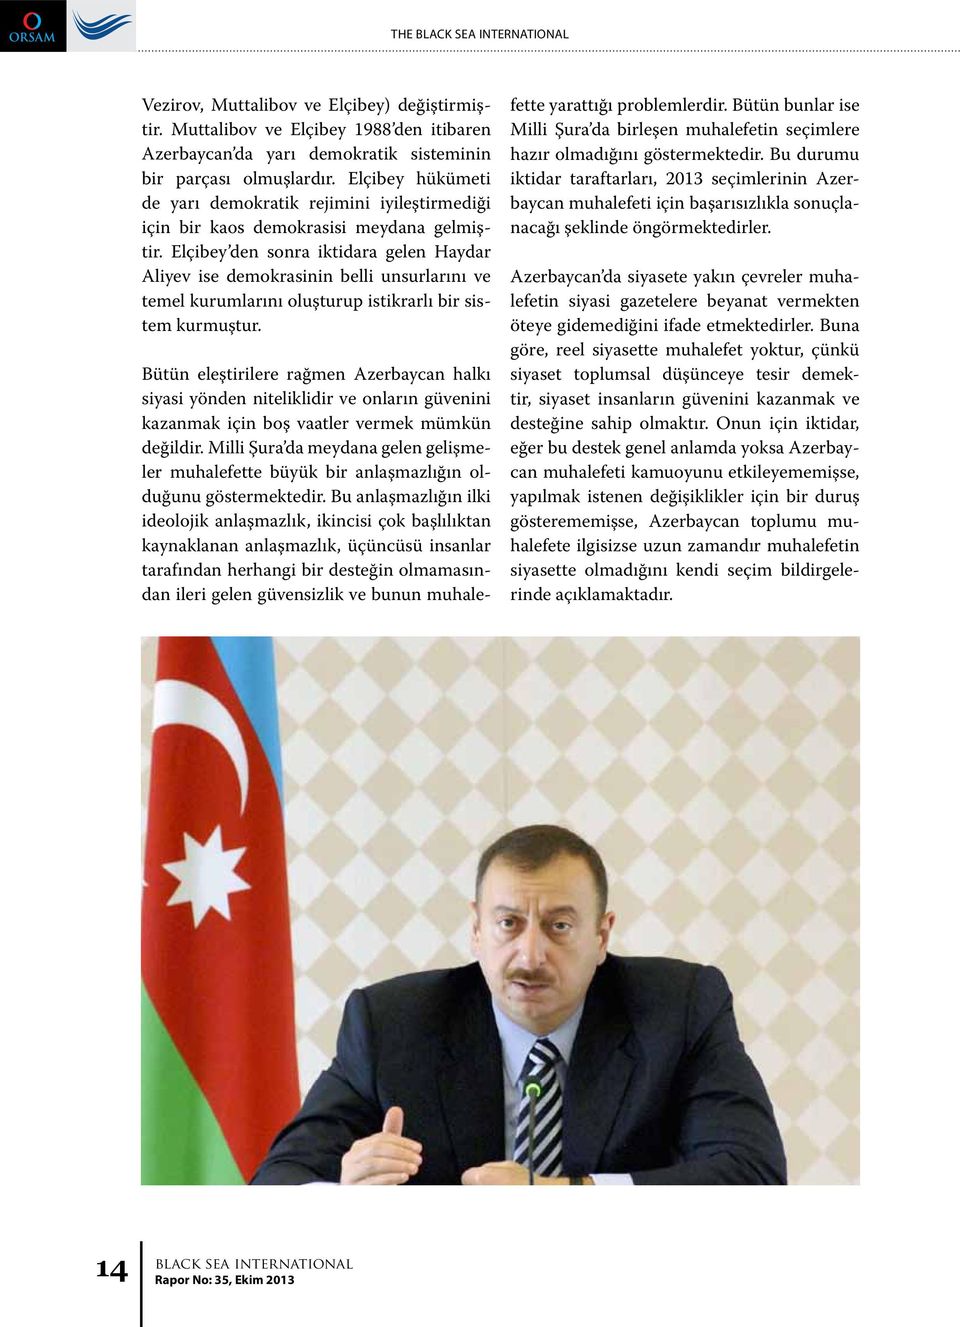 Elçibey den sonra iktidara gelen Haydar Aliyev ise demokrasinin belli unsurlarını ve temel kurumlarını oluşturup istikrarlı bir sistem kurmuştur.